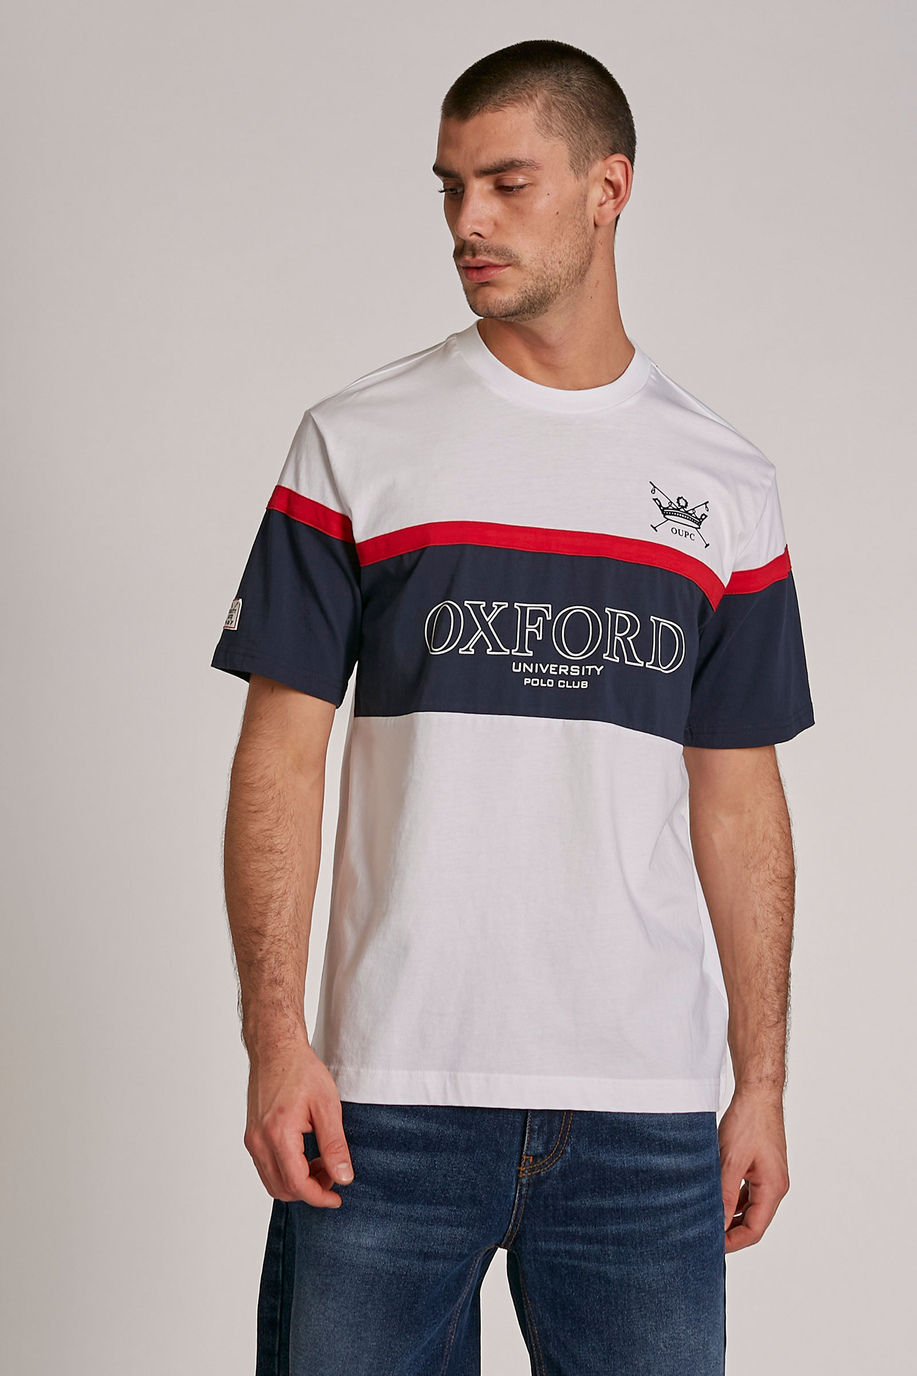 T-shirt homme en coton à manches courtes et coupe classique - T-Shirts | La Martina - Official Online Shop